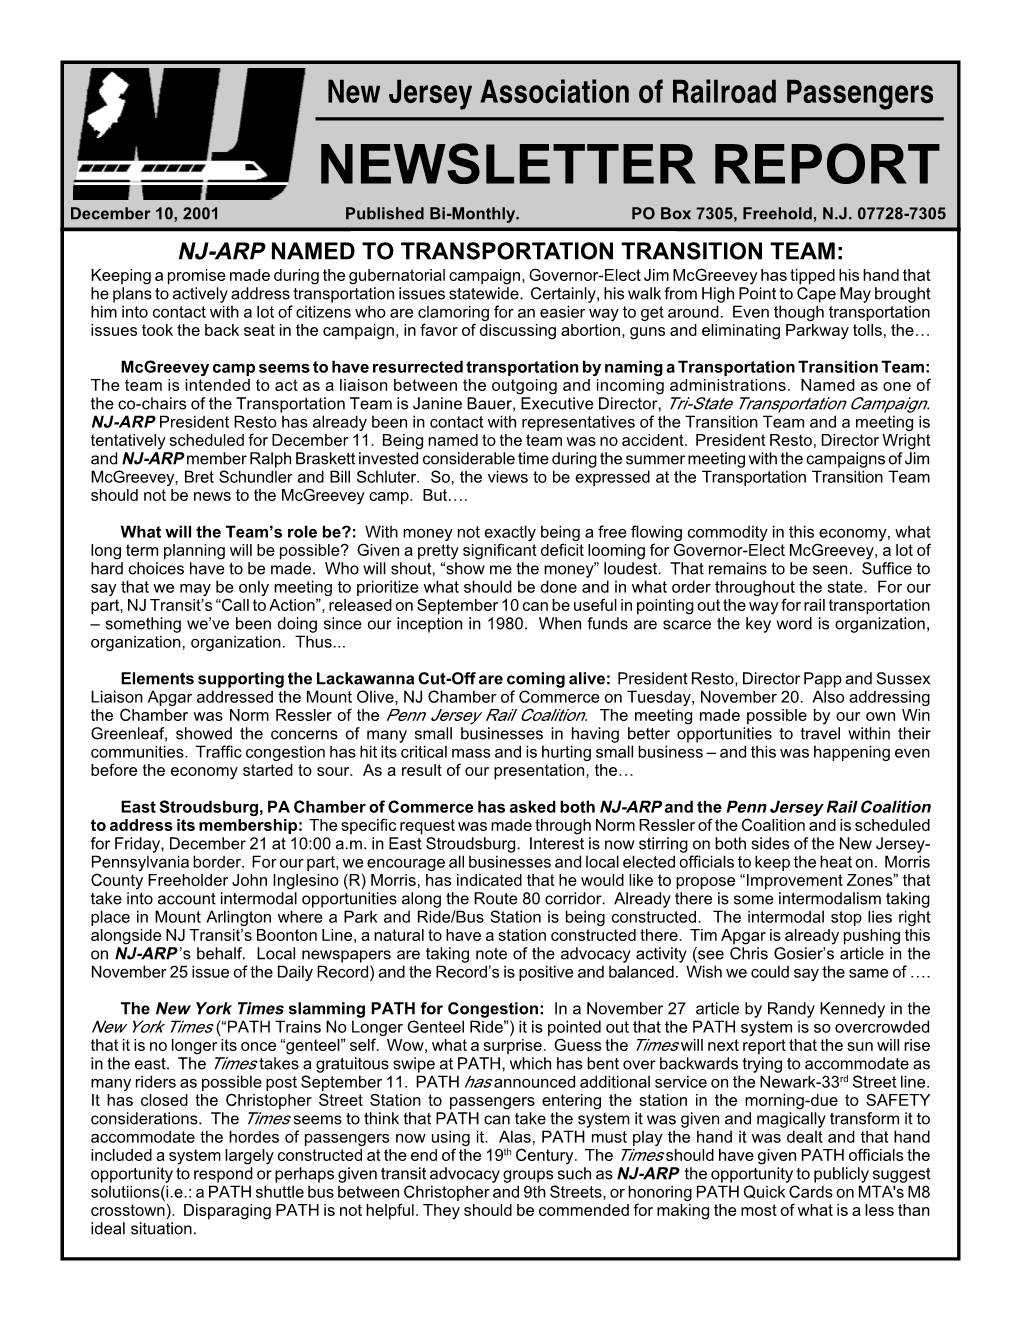 NEWSLETTER REPORT December 10, 2001 Published Bi-Monthly